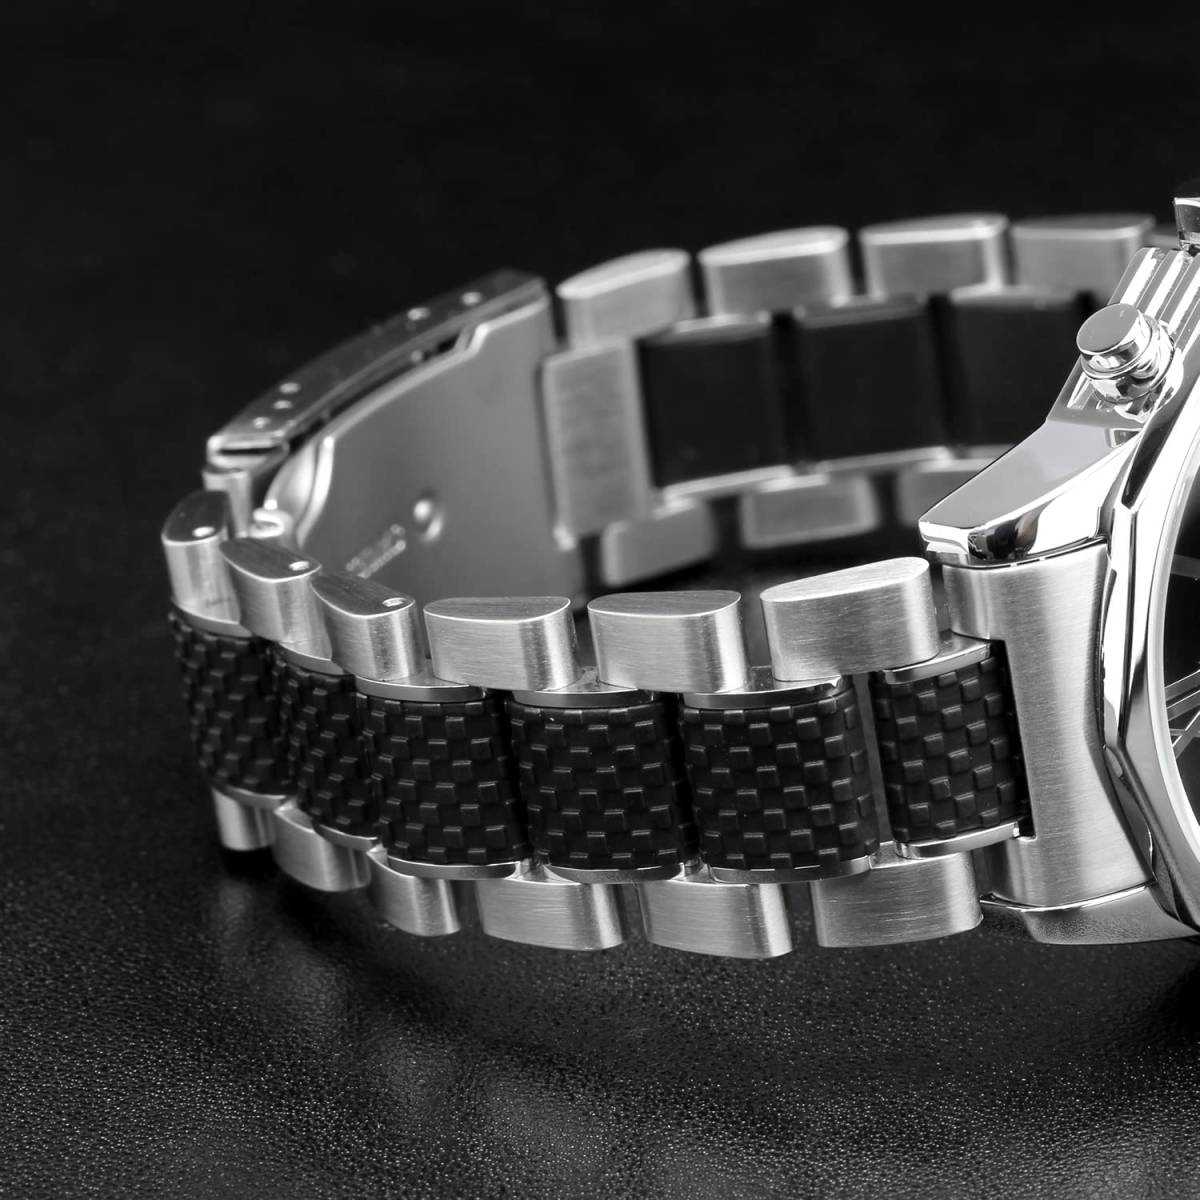 イタリアブランド 腕時計 クロノグラフ クォーツ 防水 ホワイト/ブラック アンティーク メンズ ウォッチ カジュアル フォーマル おしゃれ